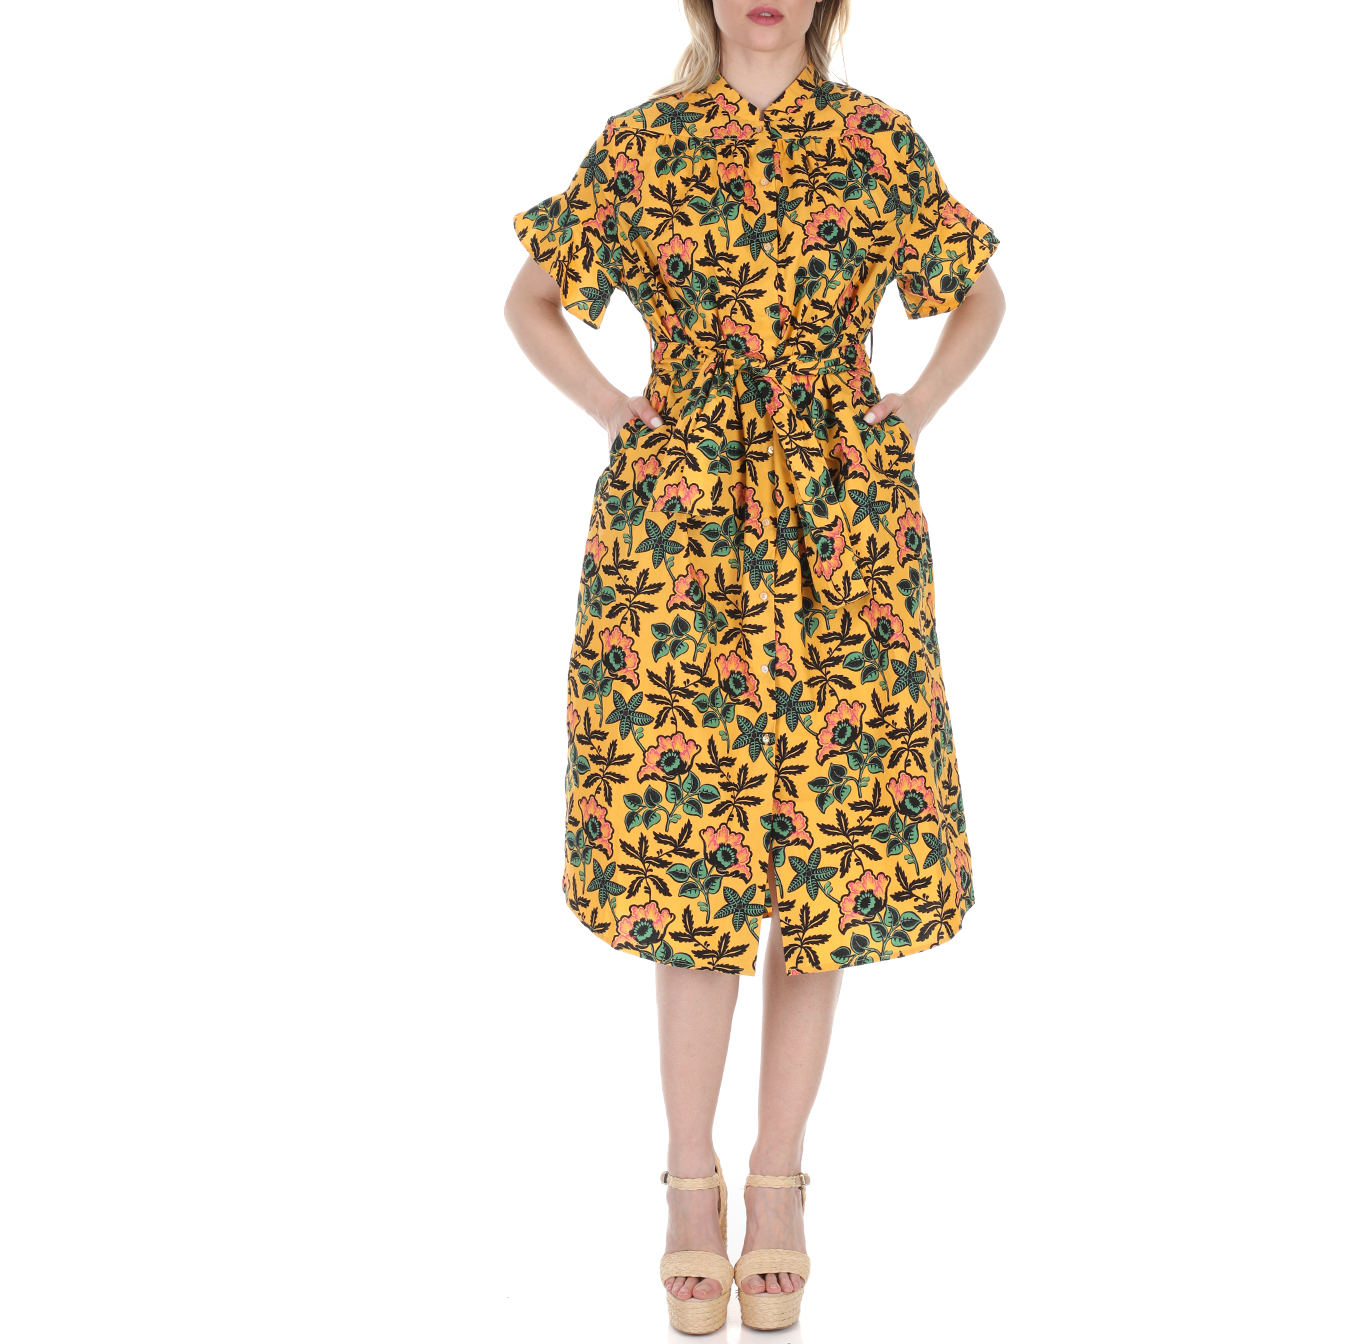 Γυναικεία/Ρούχα/Φορέματα/Μέχρι το γόνατο SCOTCH & SODA - Γυναικείο midi φόρεμα SCOTCH & SODA κίτρινο